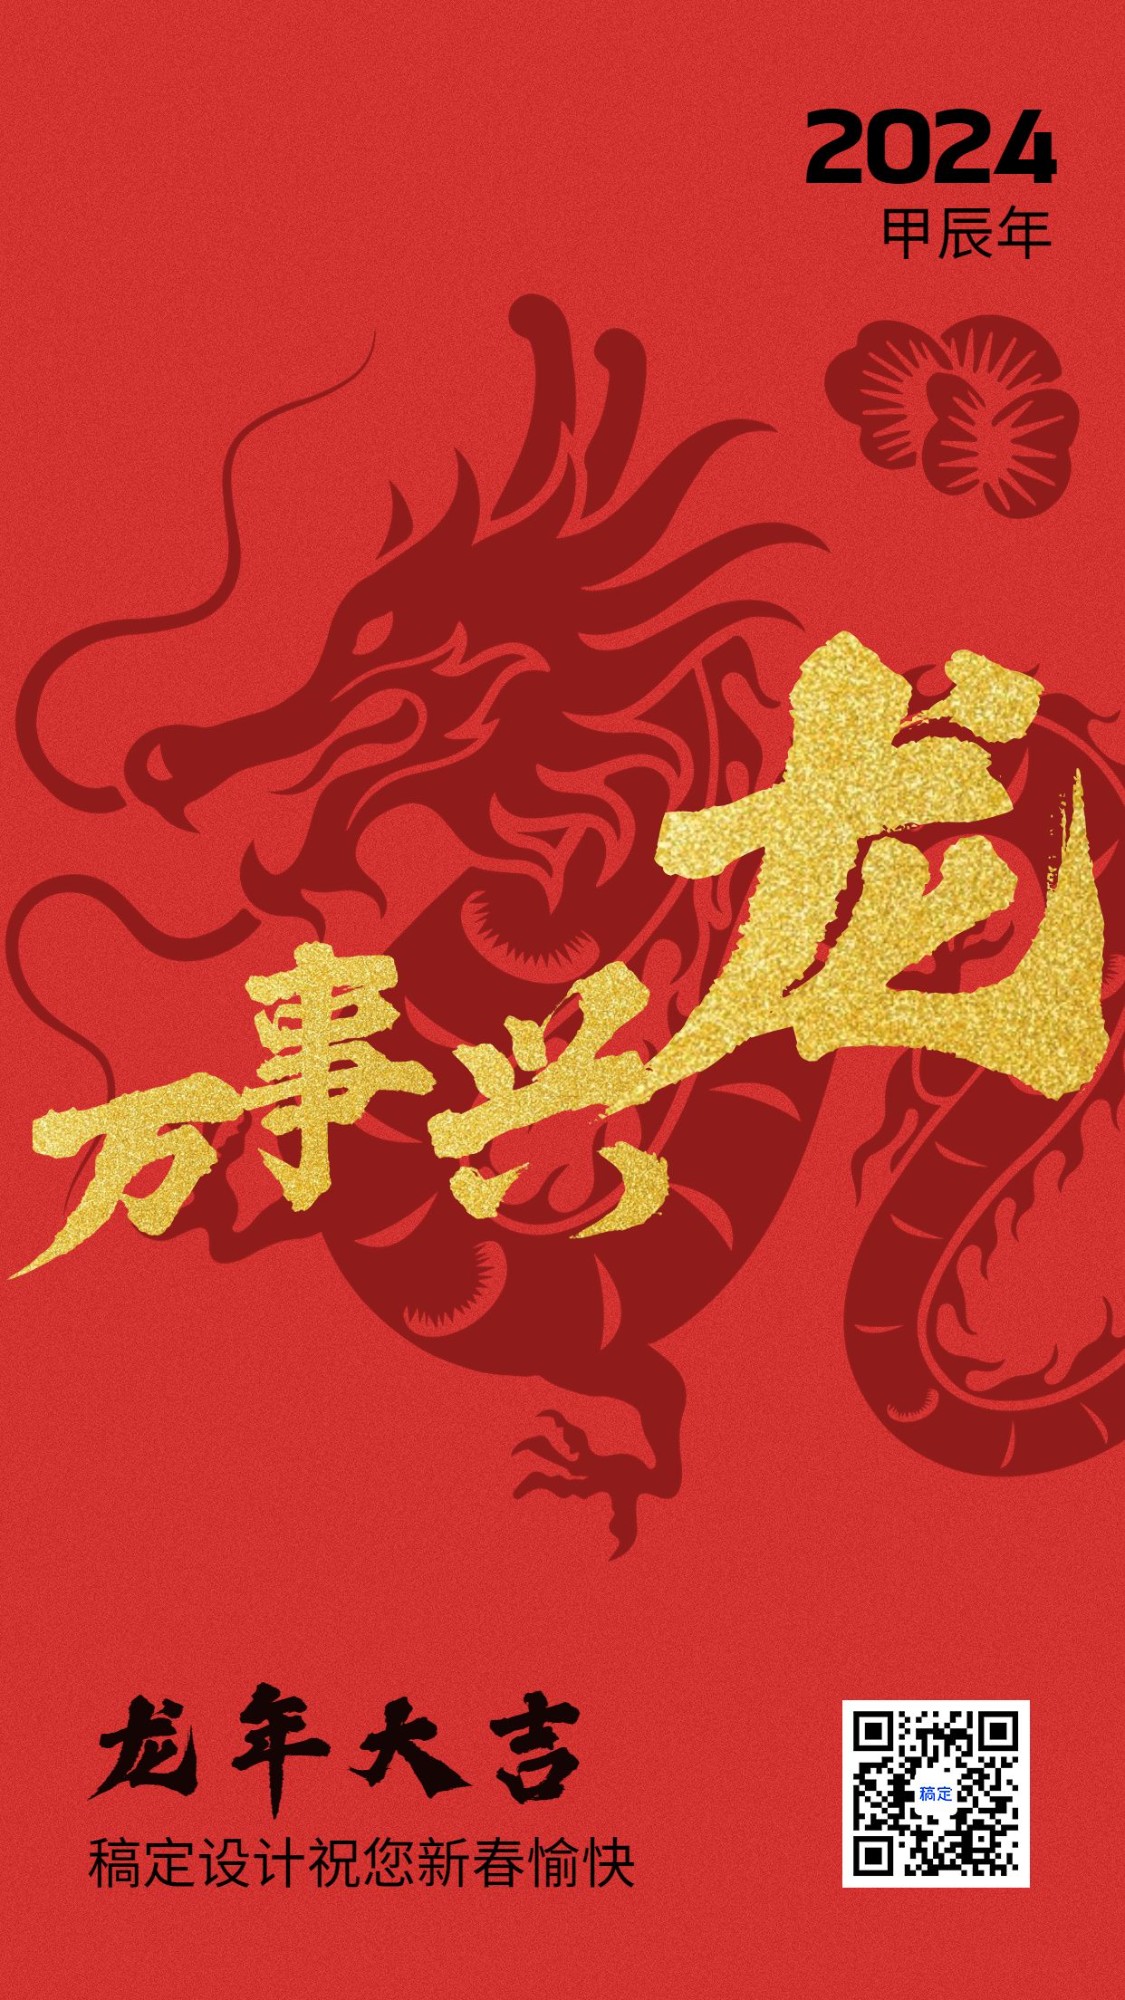 春节龙年节日祝福喜庆感谐音梗竖版海报